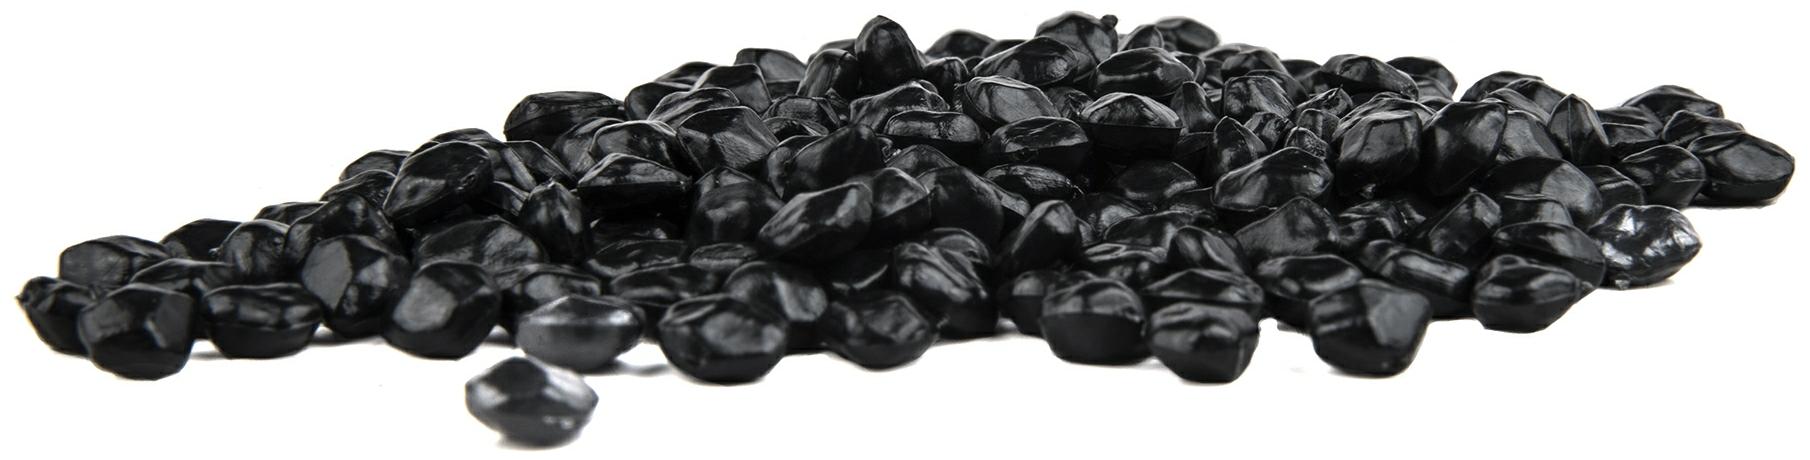 Coal pack image